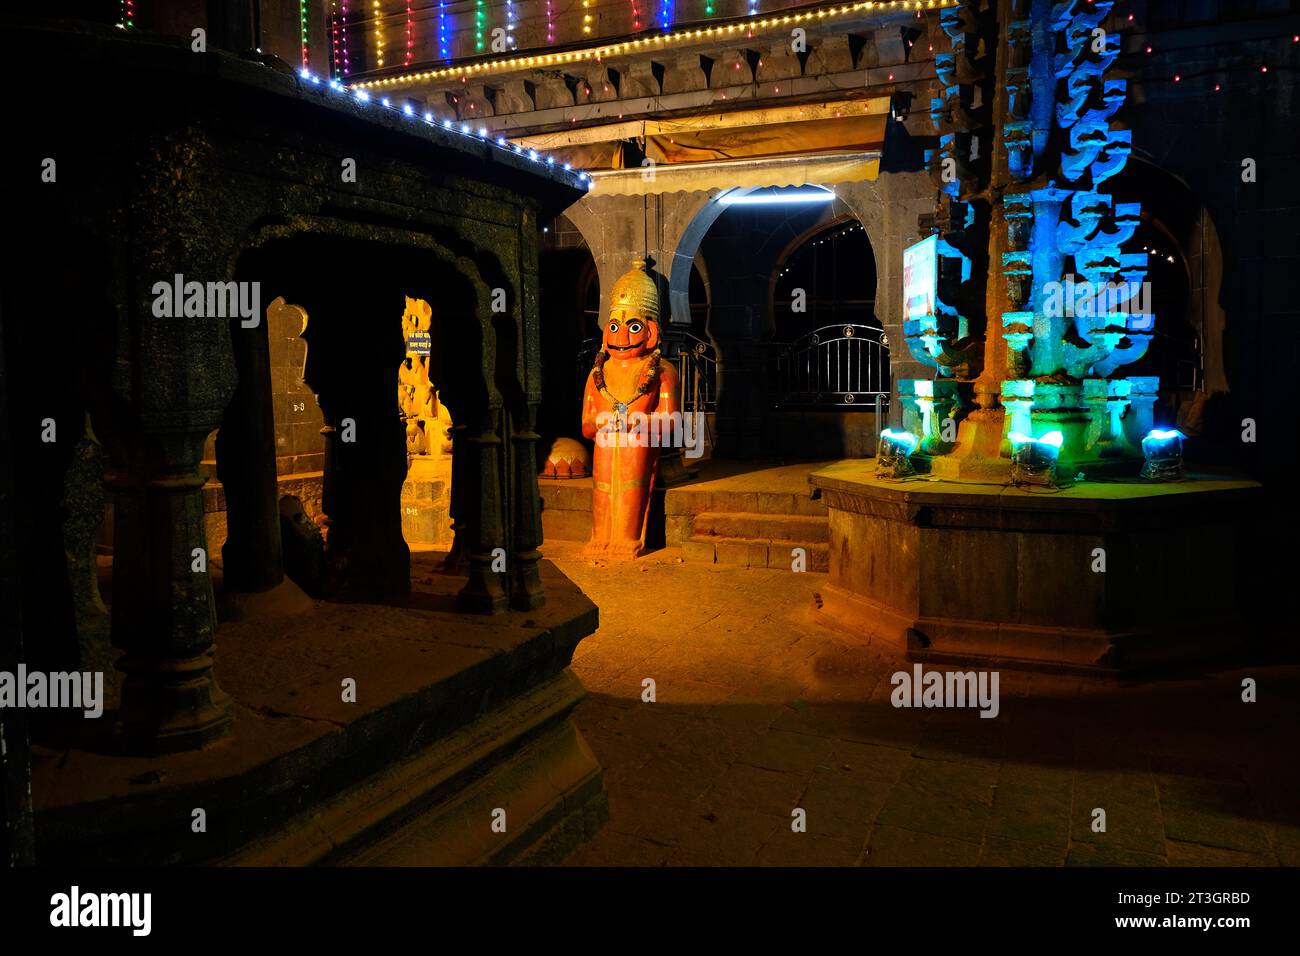 24 octobre 2023, dévot au fort de Jejuri, scène de nuit au temple de Khandoba Jejuri, dussehra en festival dans la nuit, Maharashtra, Inde. Banque D'Images